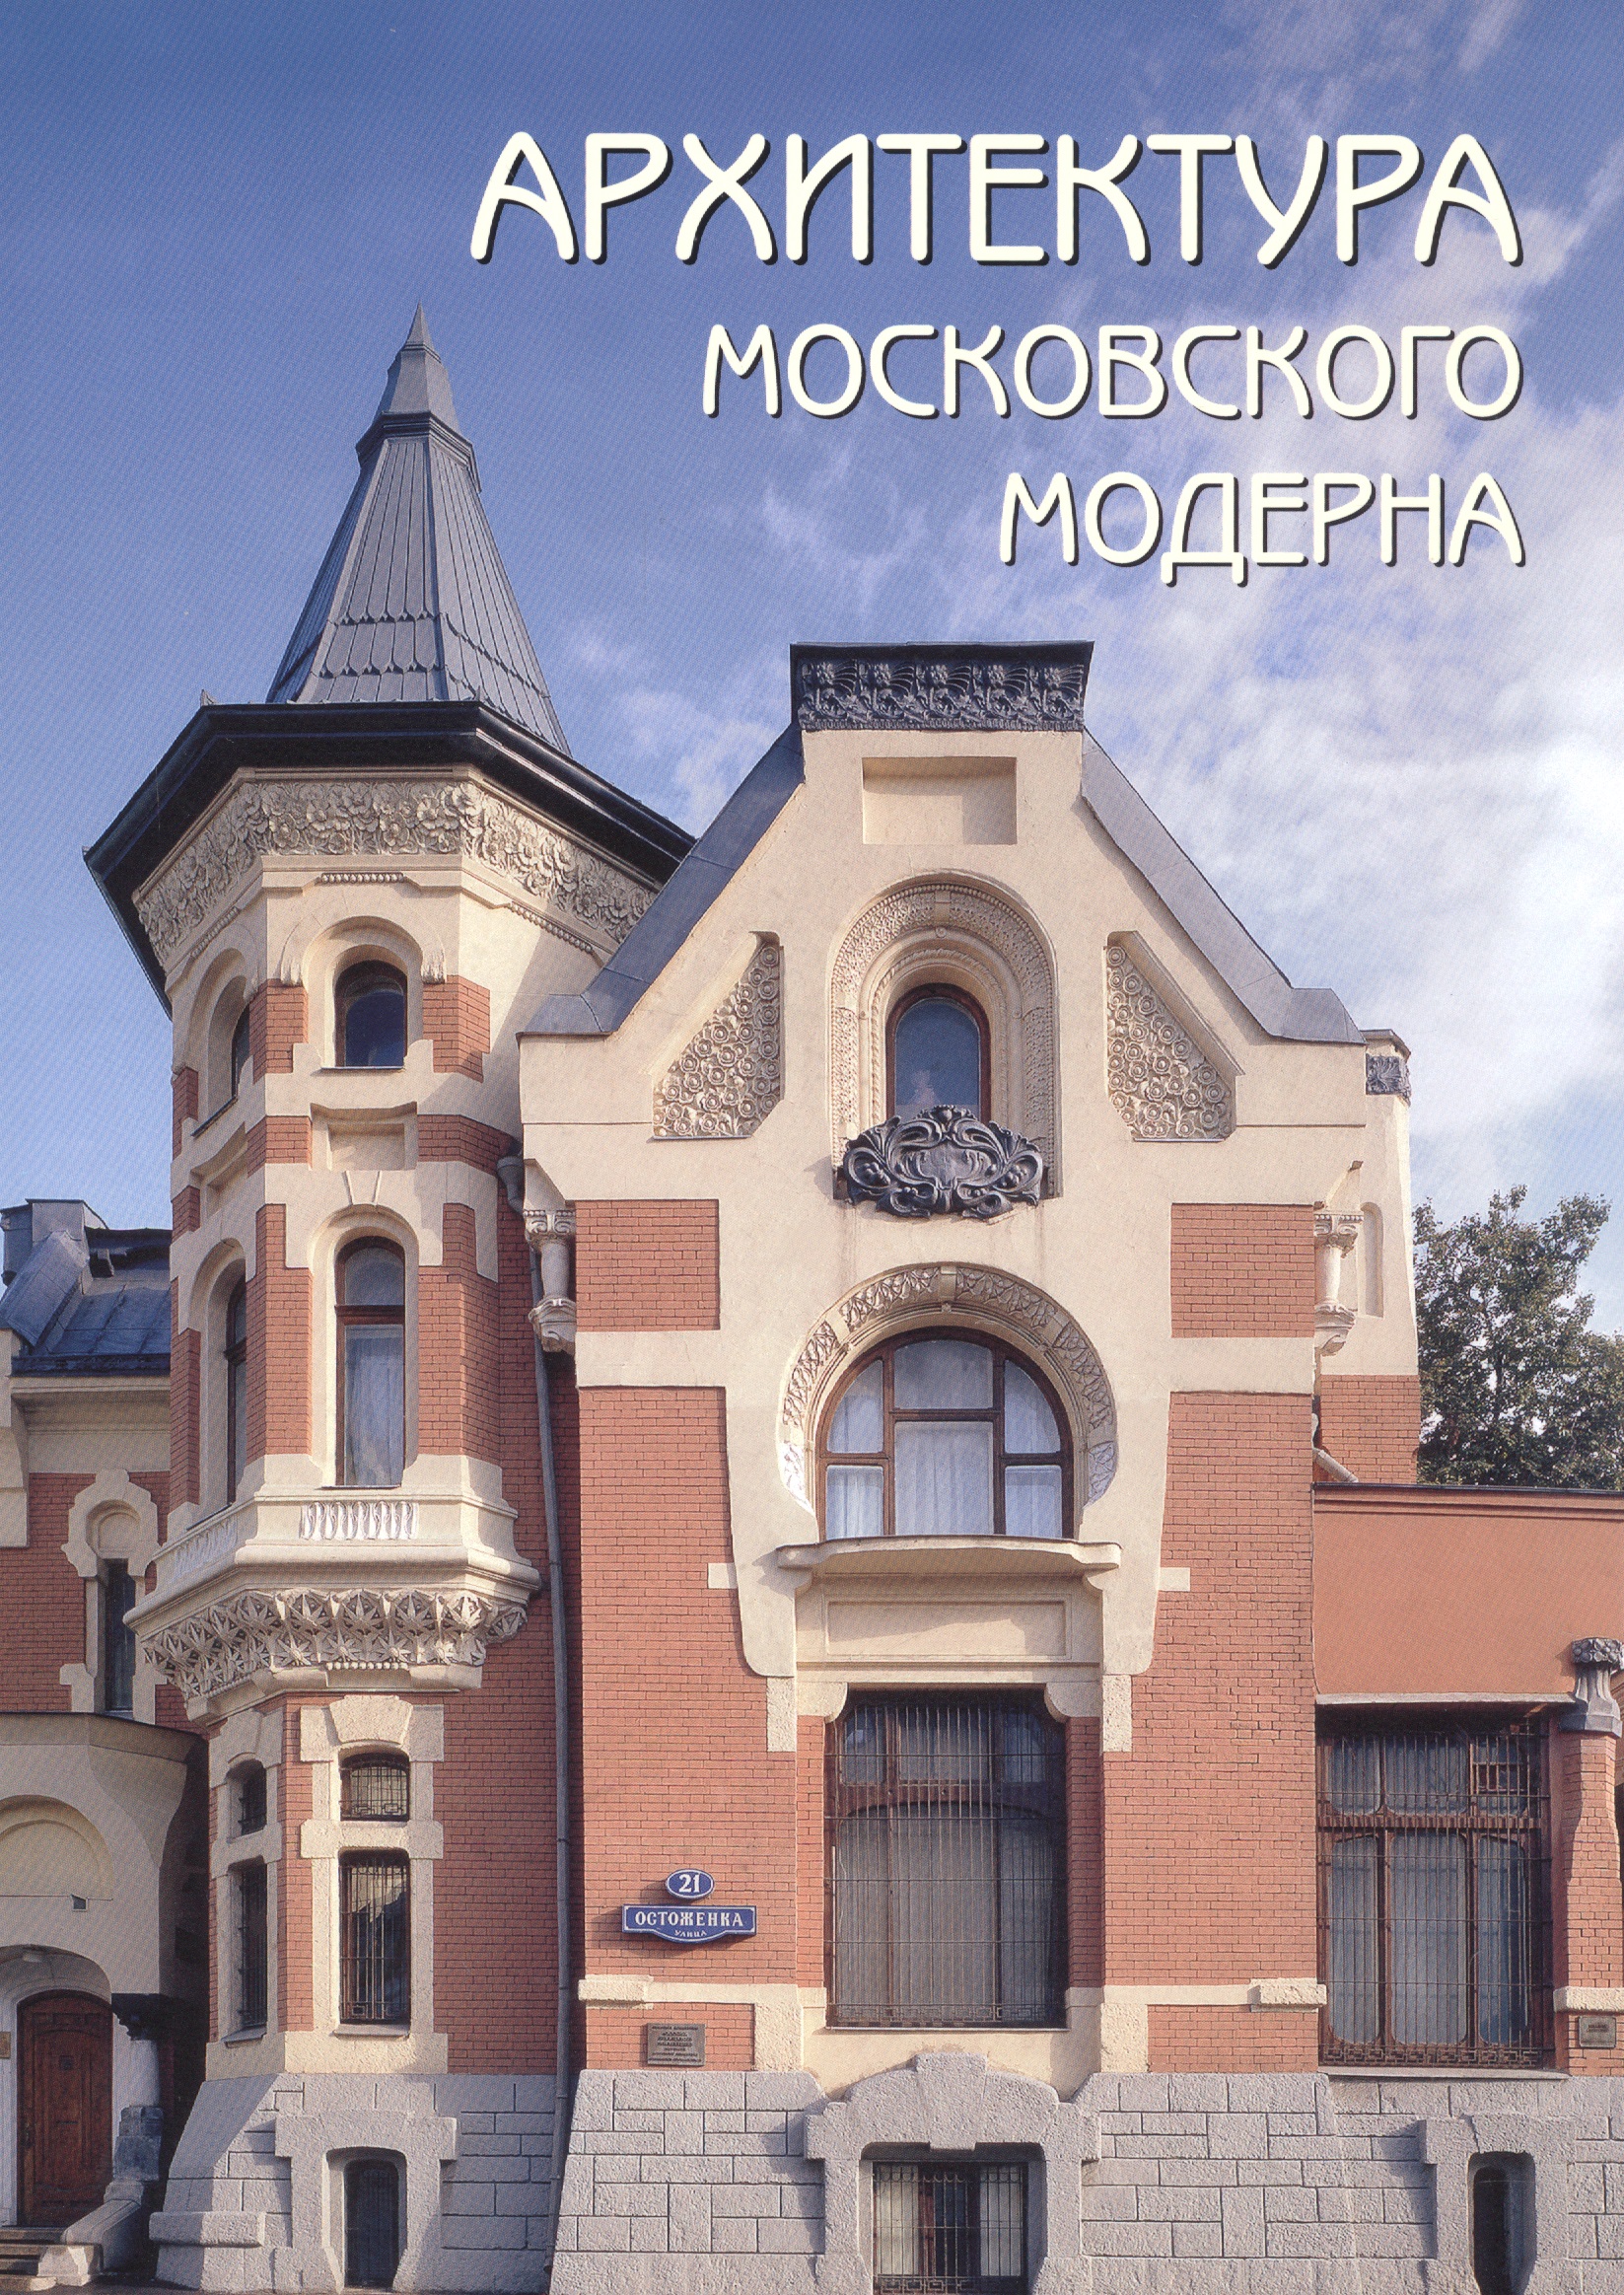 кирилов б архитектура петербургского модерна общественные здания книга первая Архитектура московского модерна